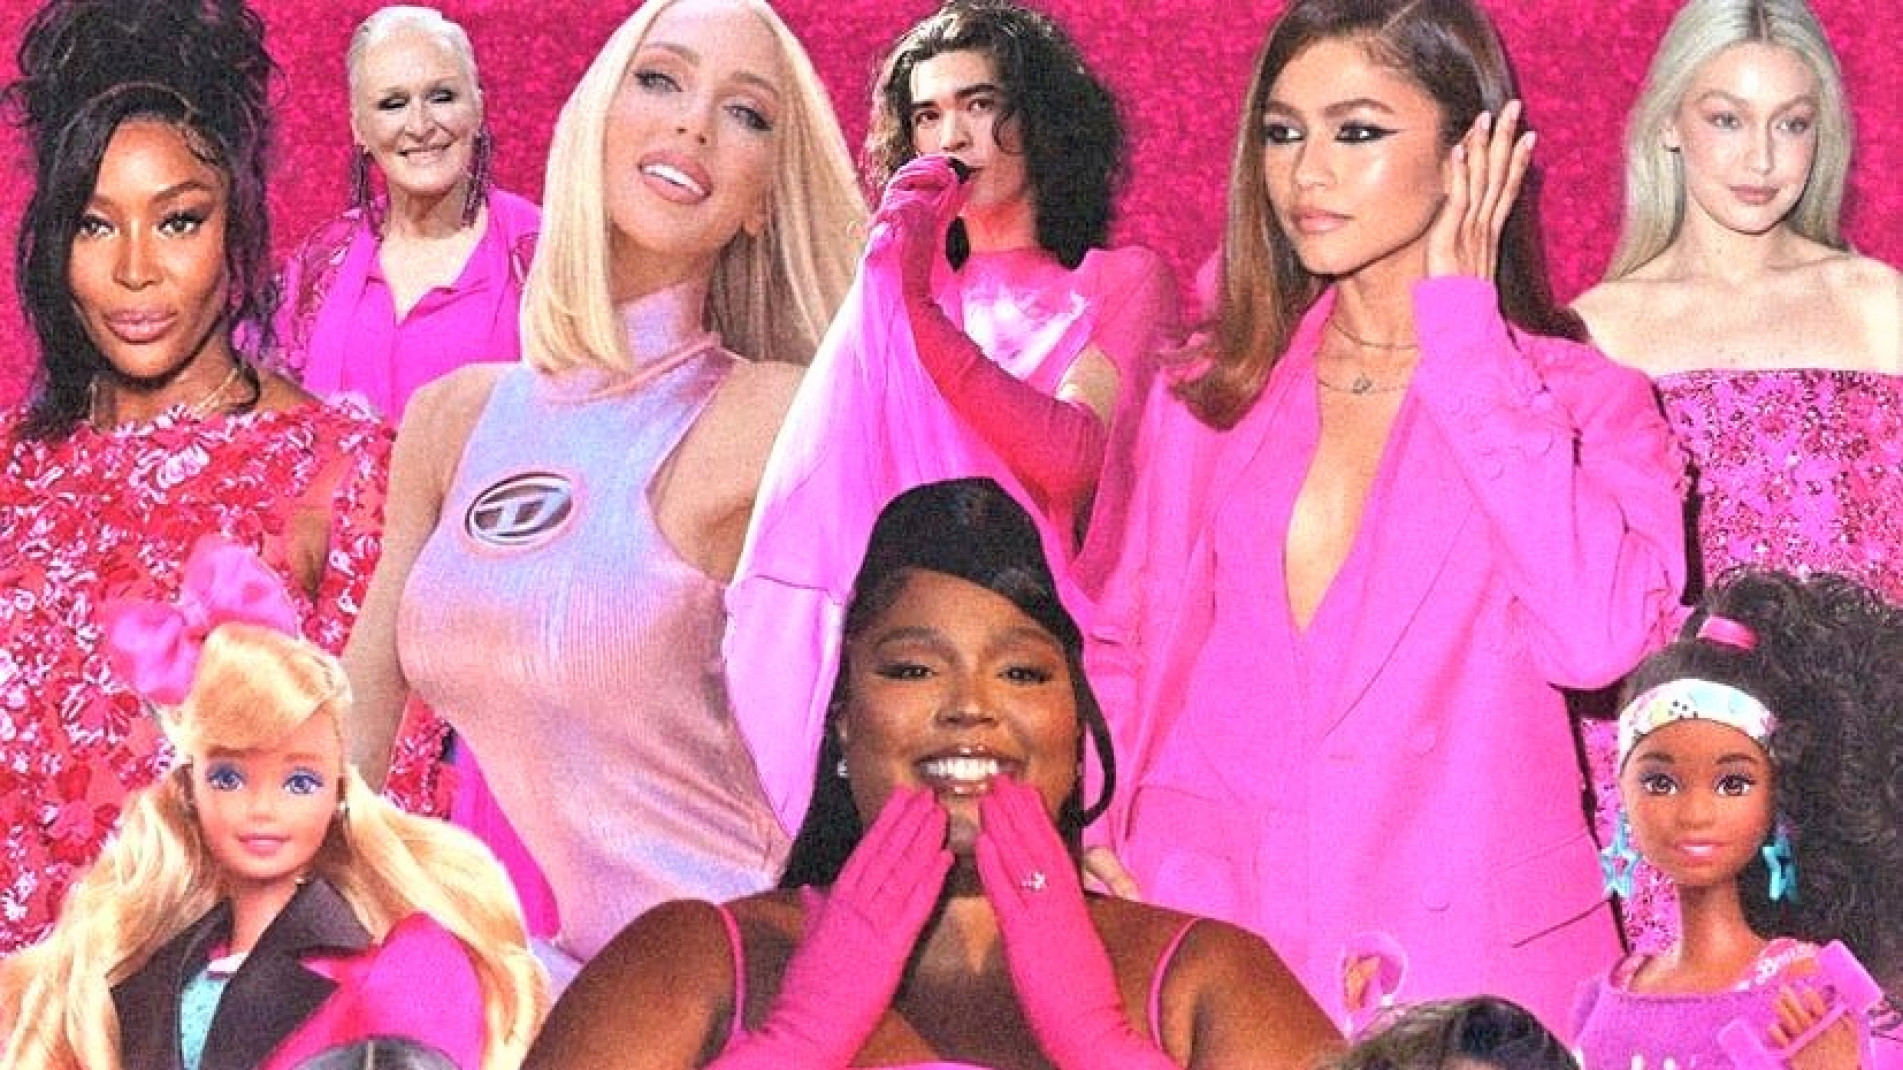 Barbiecore: o pink está na moda e a culpa é toda do filme da